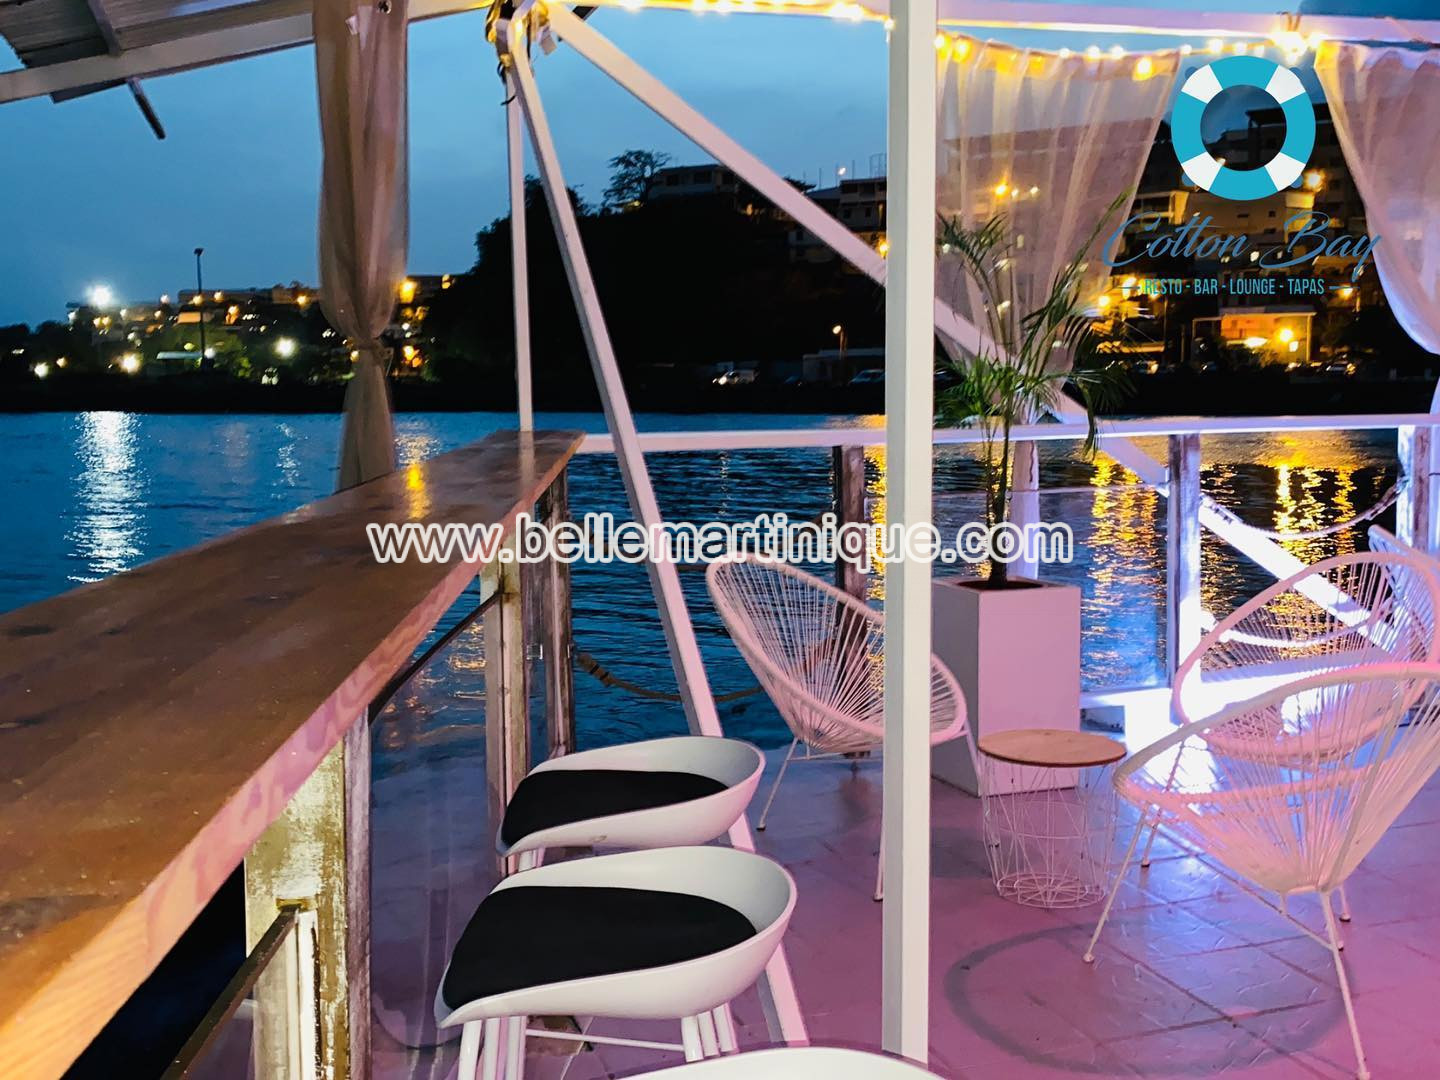 Cotton Bay - Restaurant - Bar Lounge - Tapas - Fort de France - Martinique - Antilles - Caraibes 8